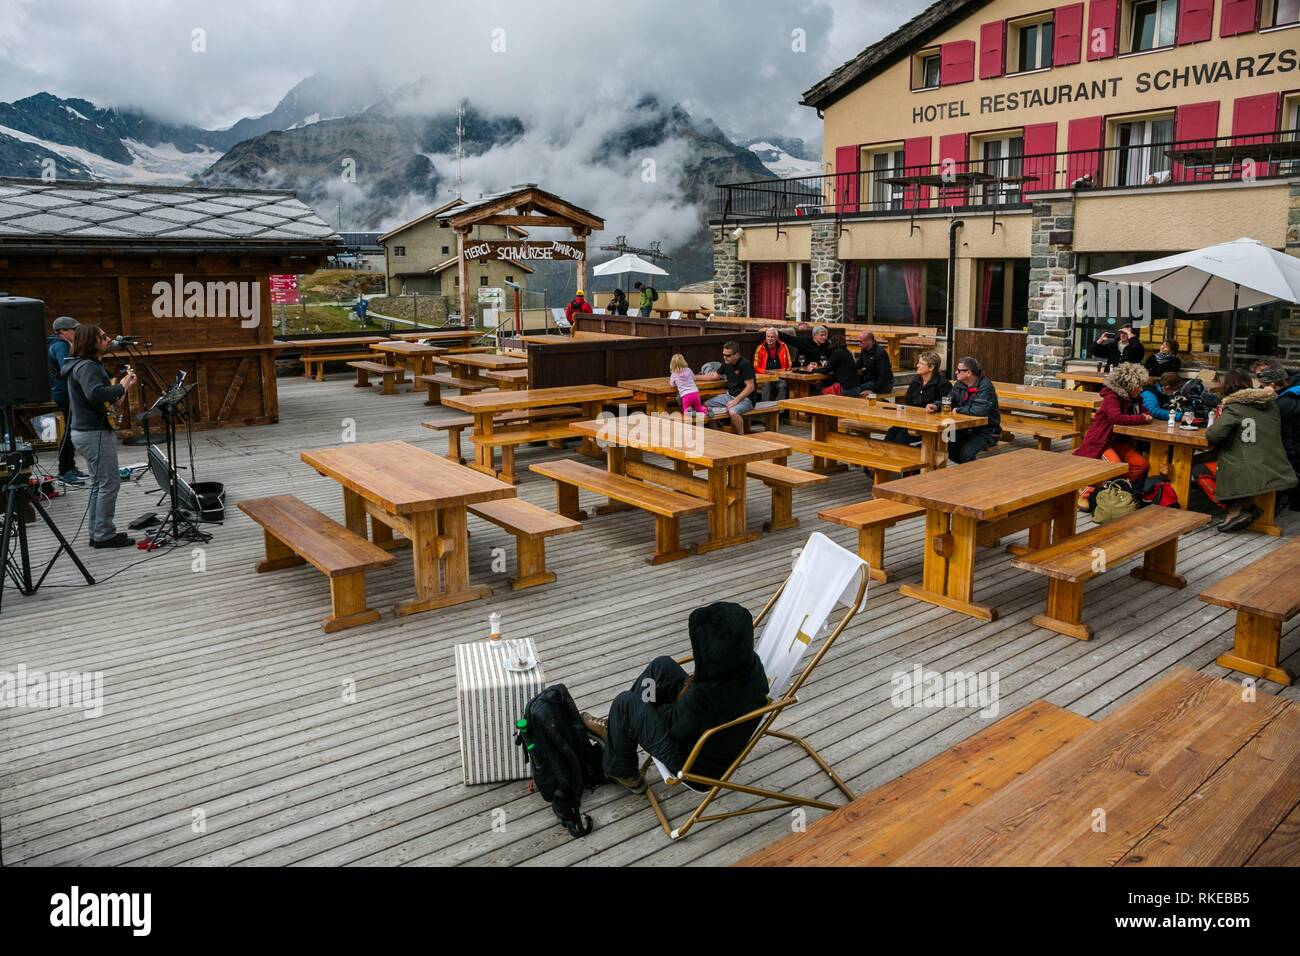 Schwarzsee Hotel Restaurant. 2583 m. Zermatt. Schweizer Alpen. Wallis. Die  Schweiz. Europa Stockfotografie - Alamy